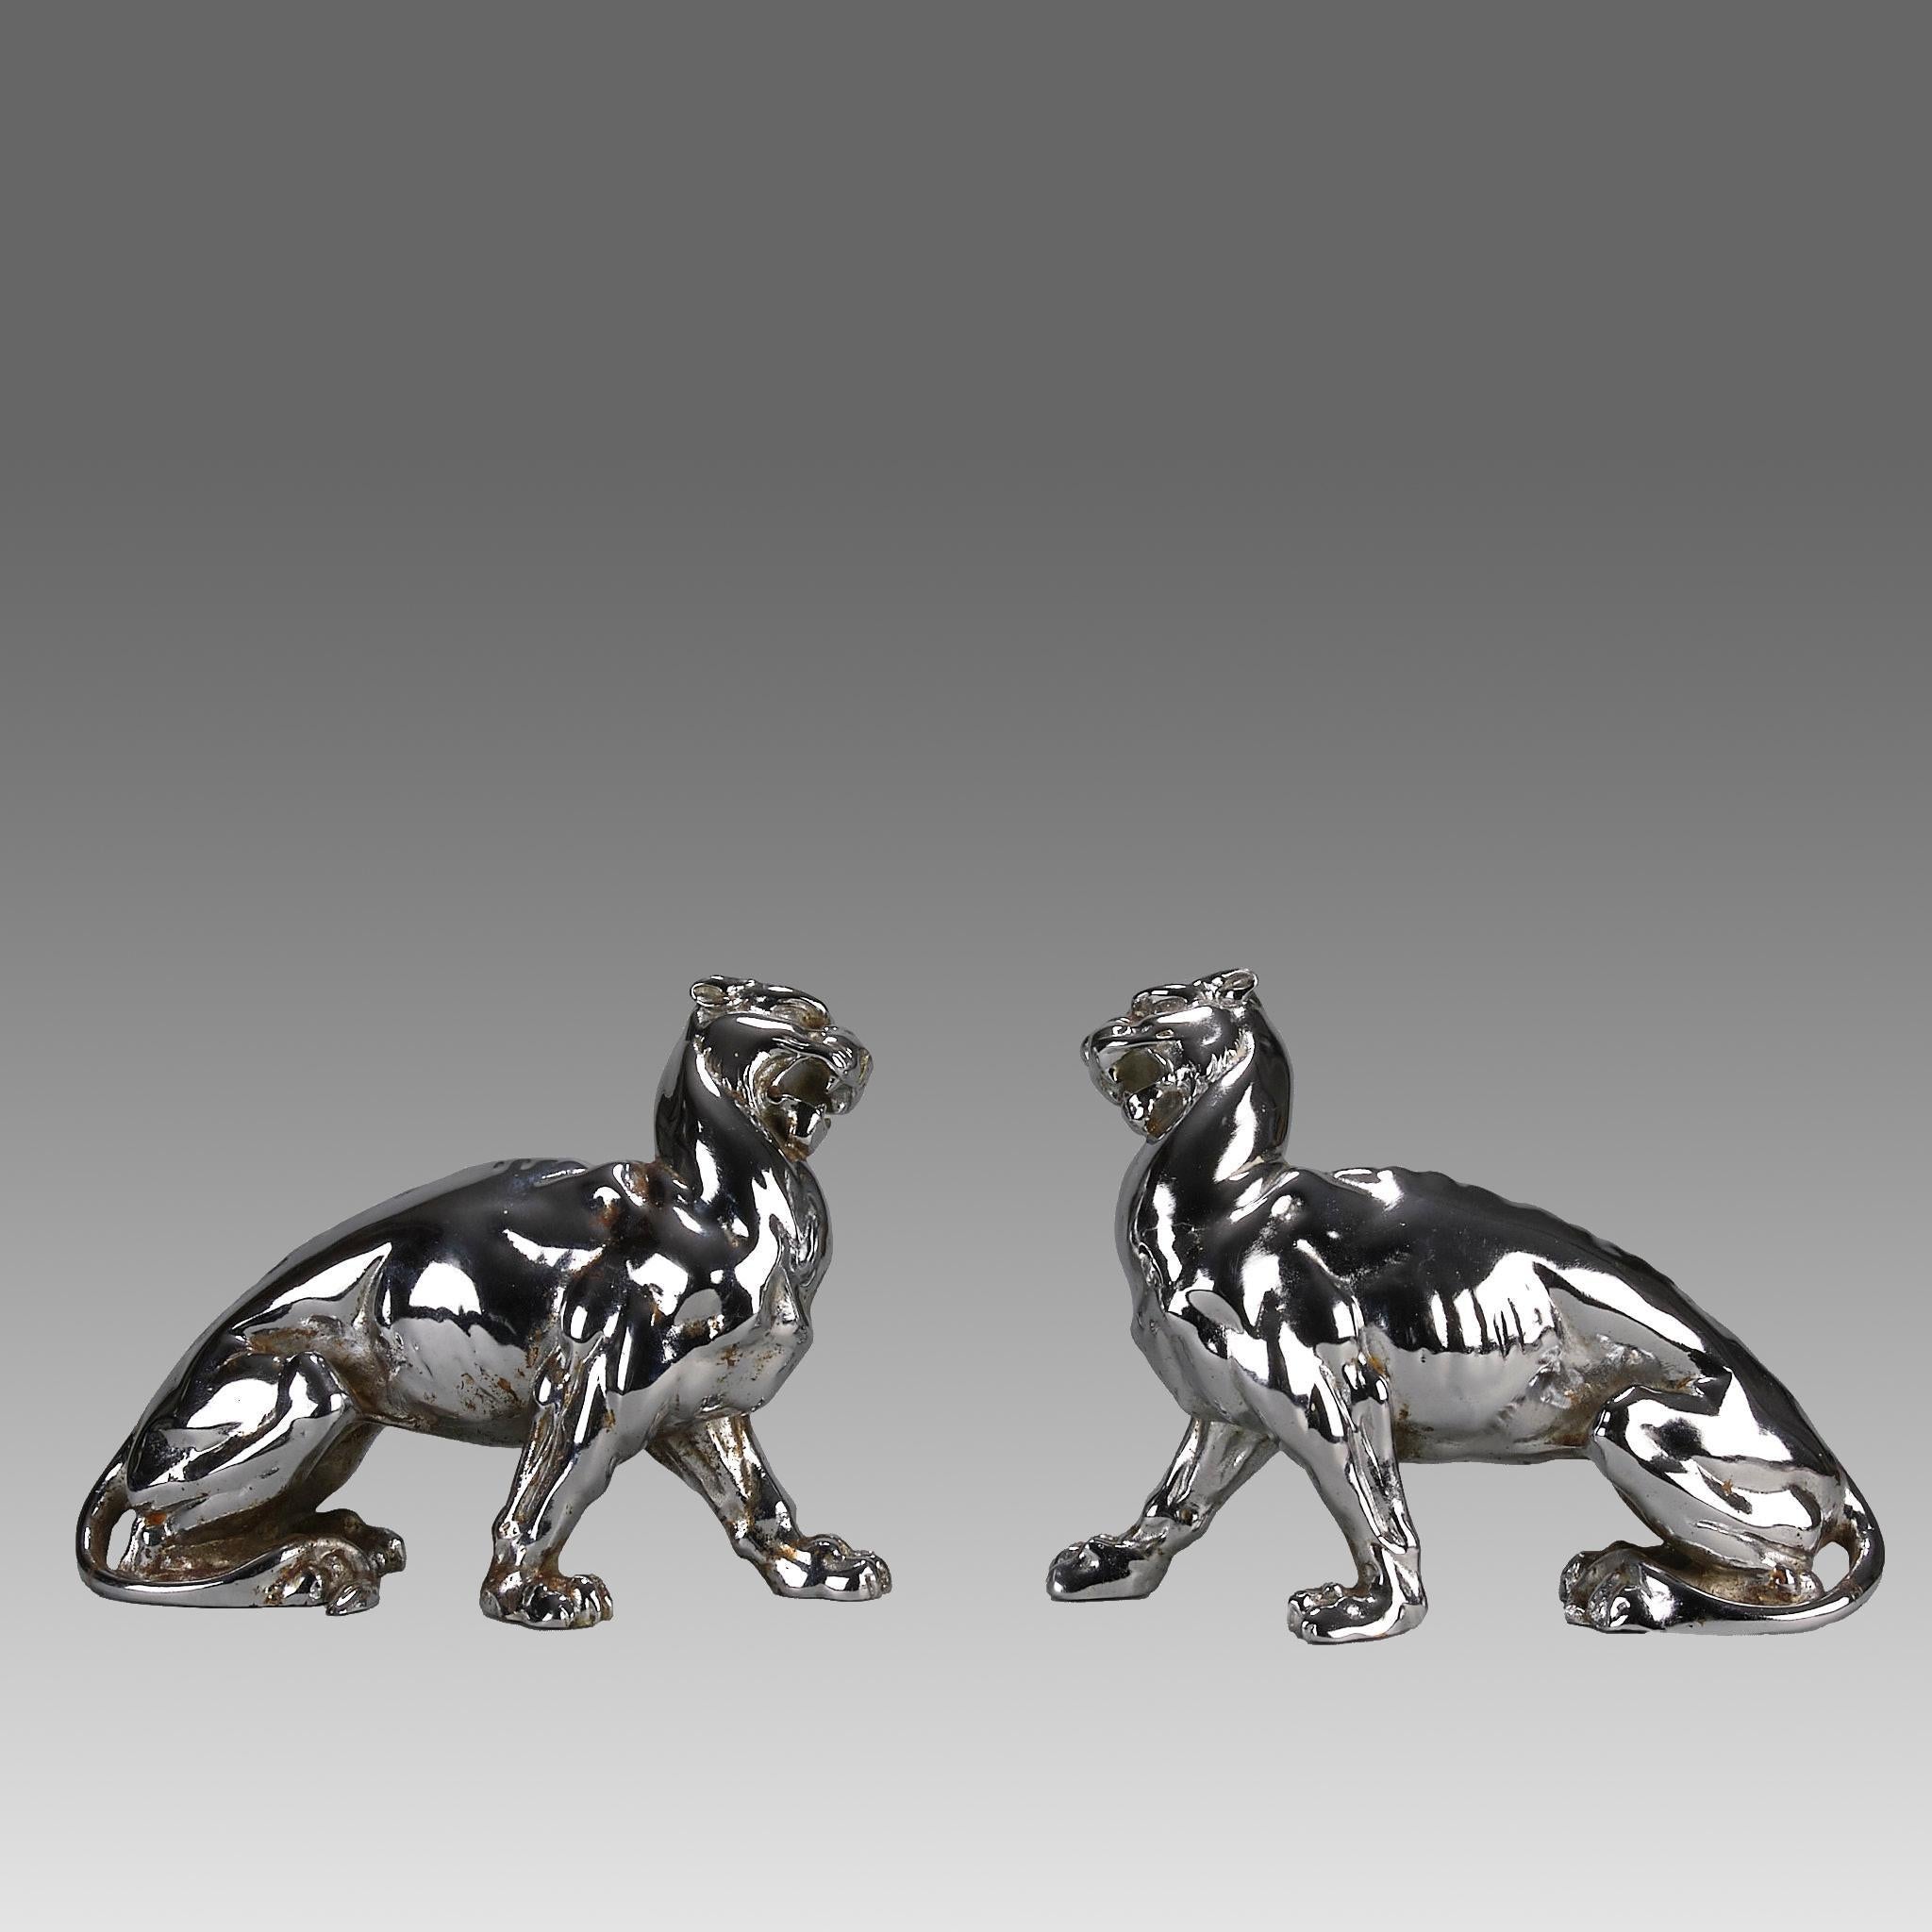 Ein auffälliges Paar verchromter Gusseisenskulpturen aus dem frühen 20. Jahrhundert, modelliert als zwei sich drehende Panther in spiegelnden Posen, gestempelt mit rautenförmigen Export-/Importmarken

ZUSÄTZLICHE INFORMATIONEN
Höhe:                 